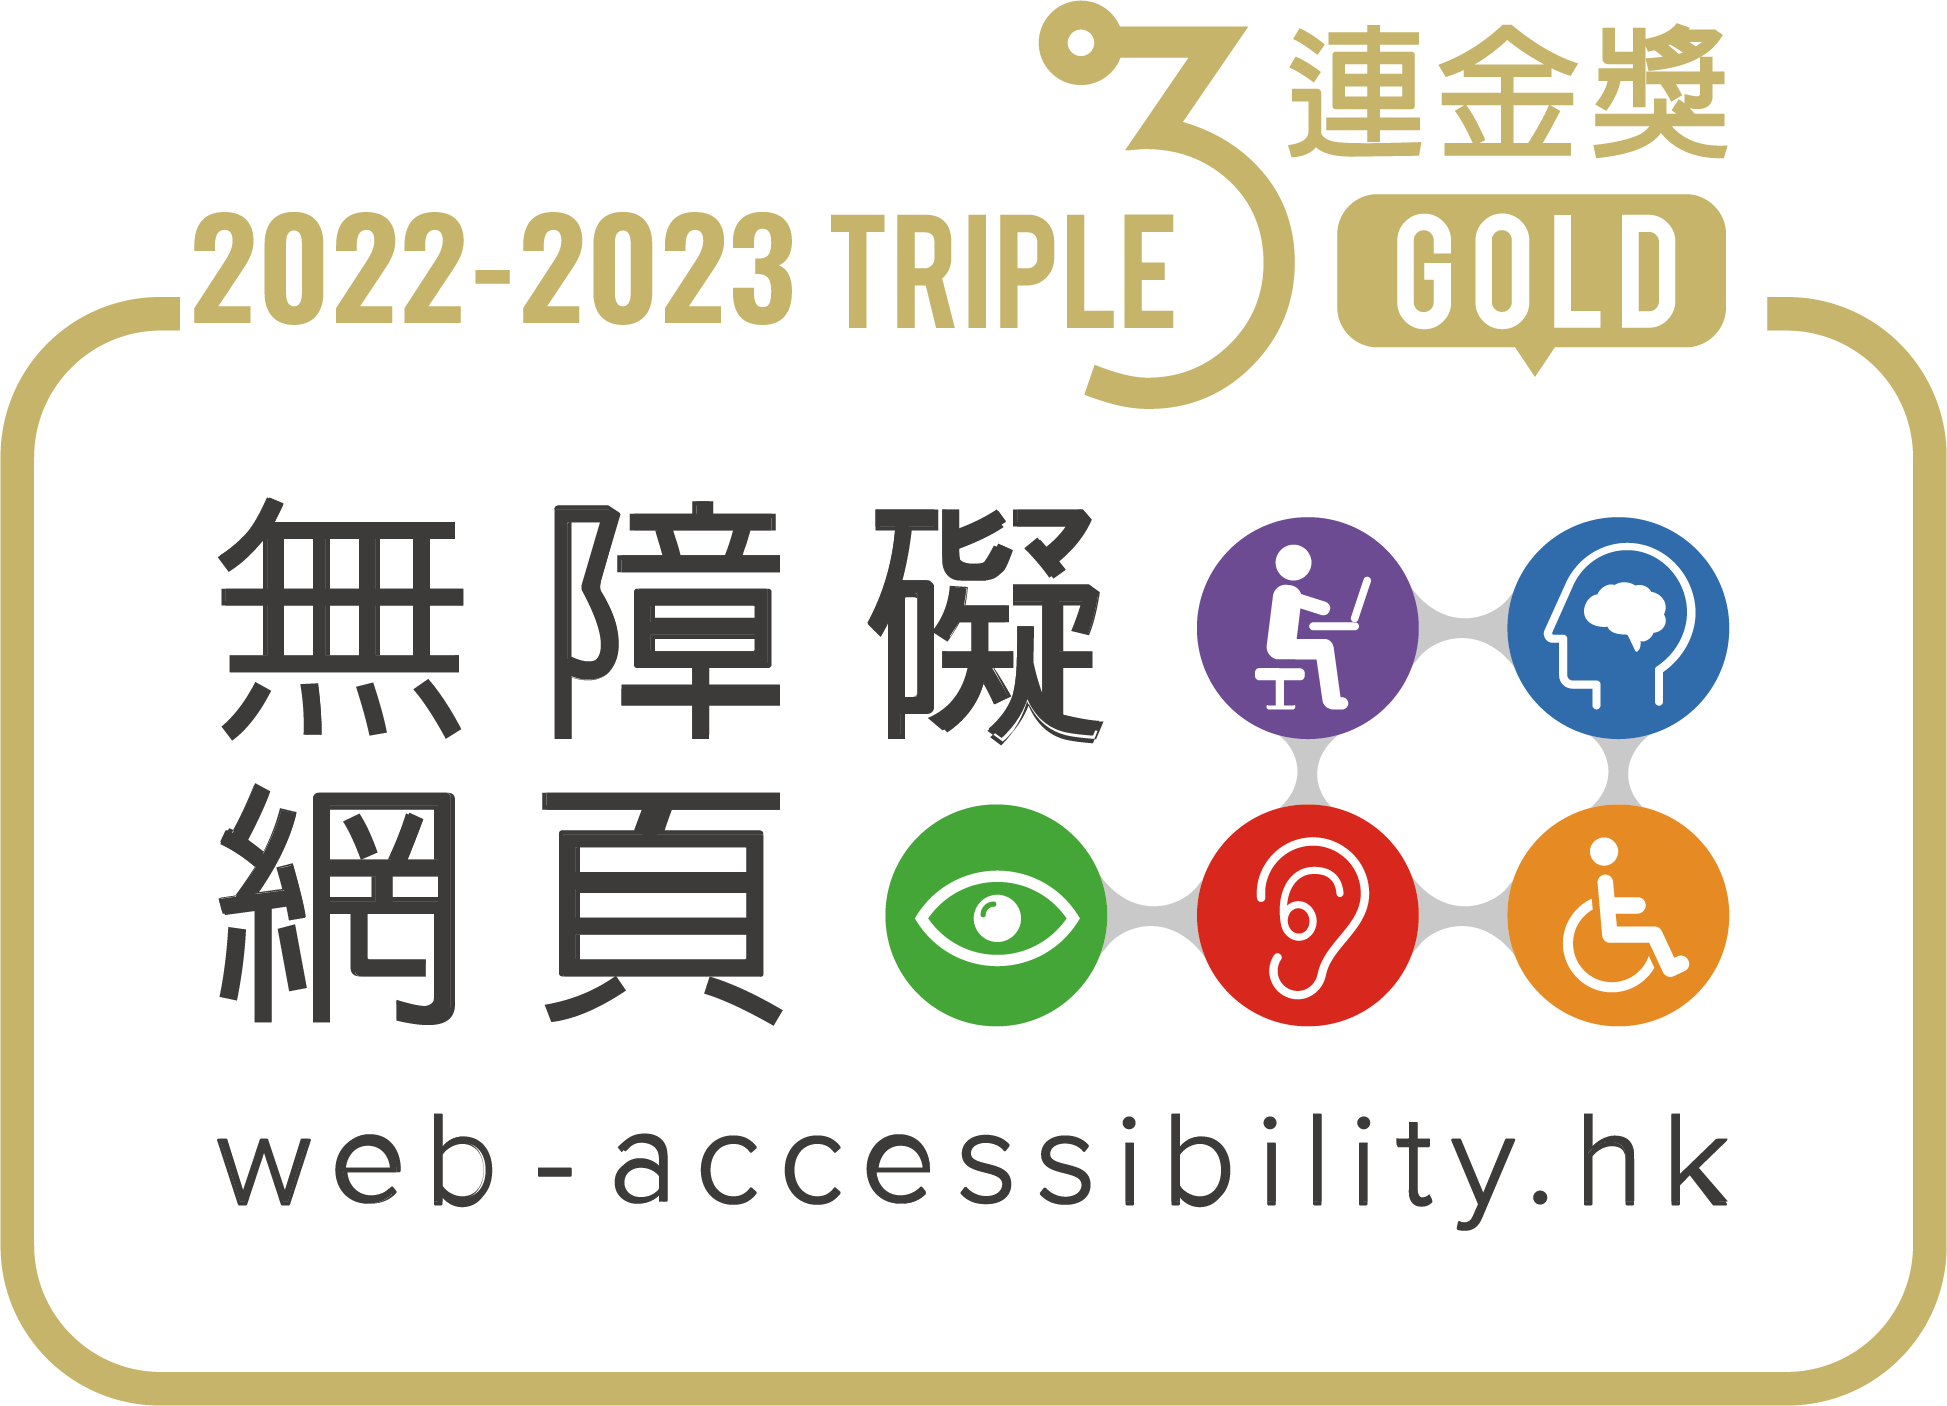 2022-2023 無障礙網頁嘉許計劃3連金獎標誌